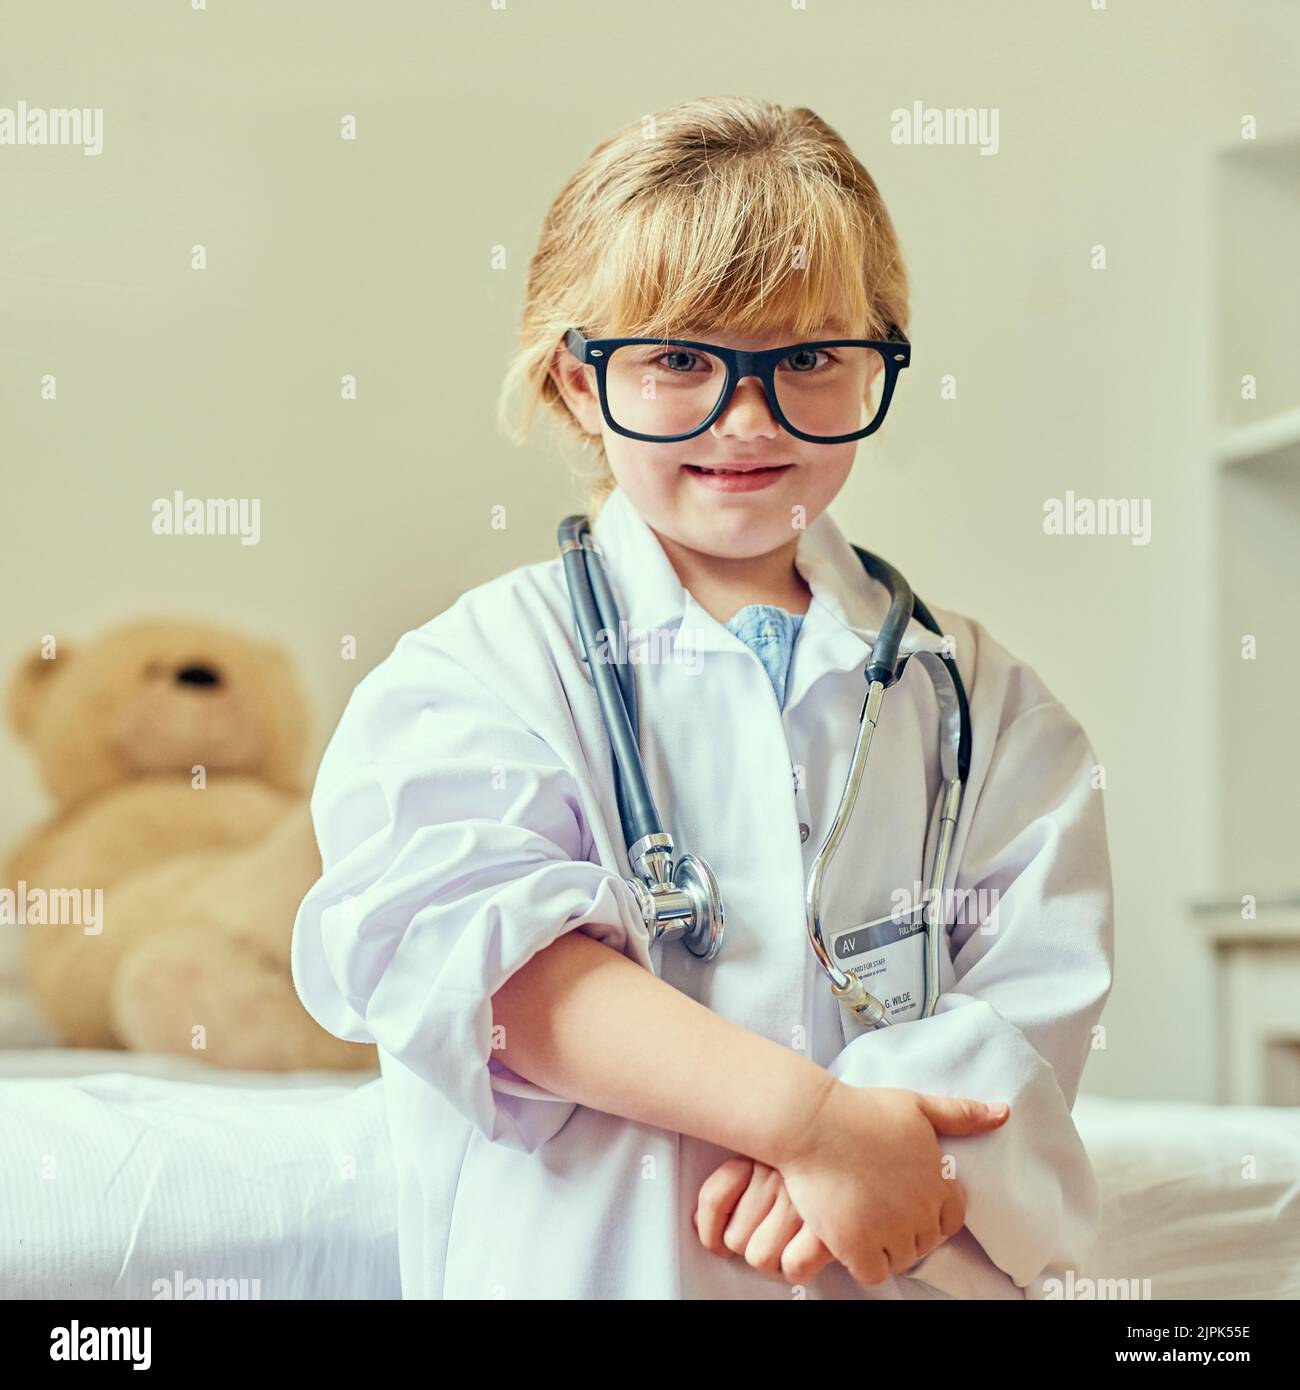 Quando im grande voglio essere un medico. Ritratto di una adorabile bambina vestita da medico. Foto Stock